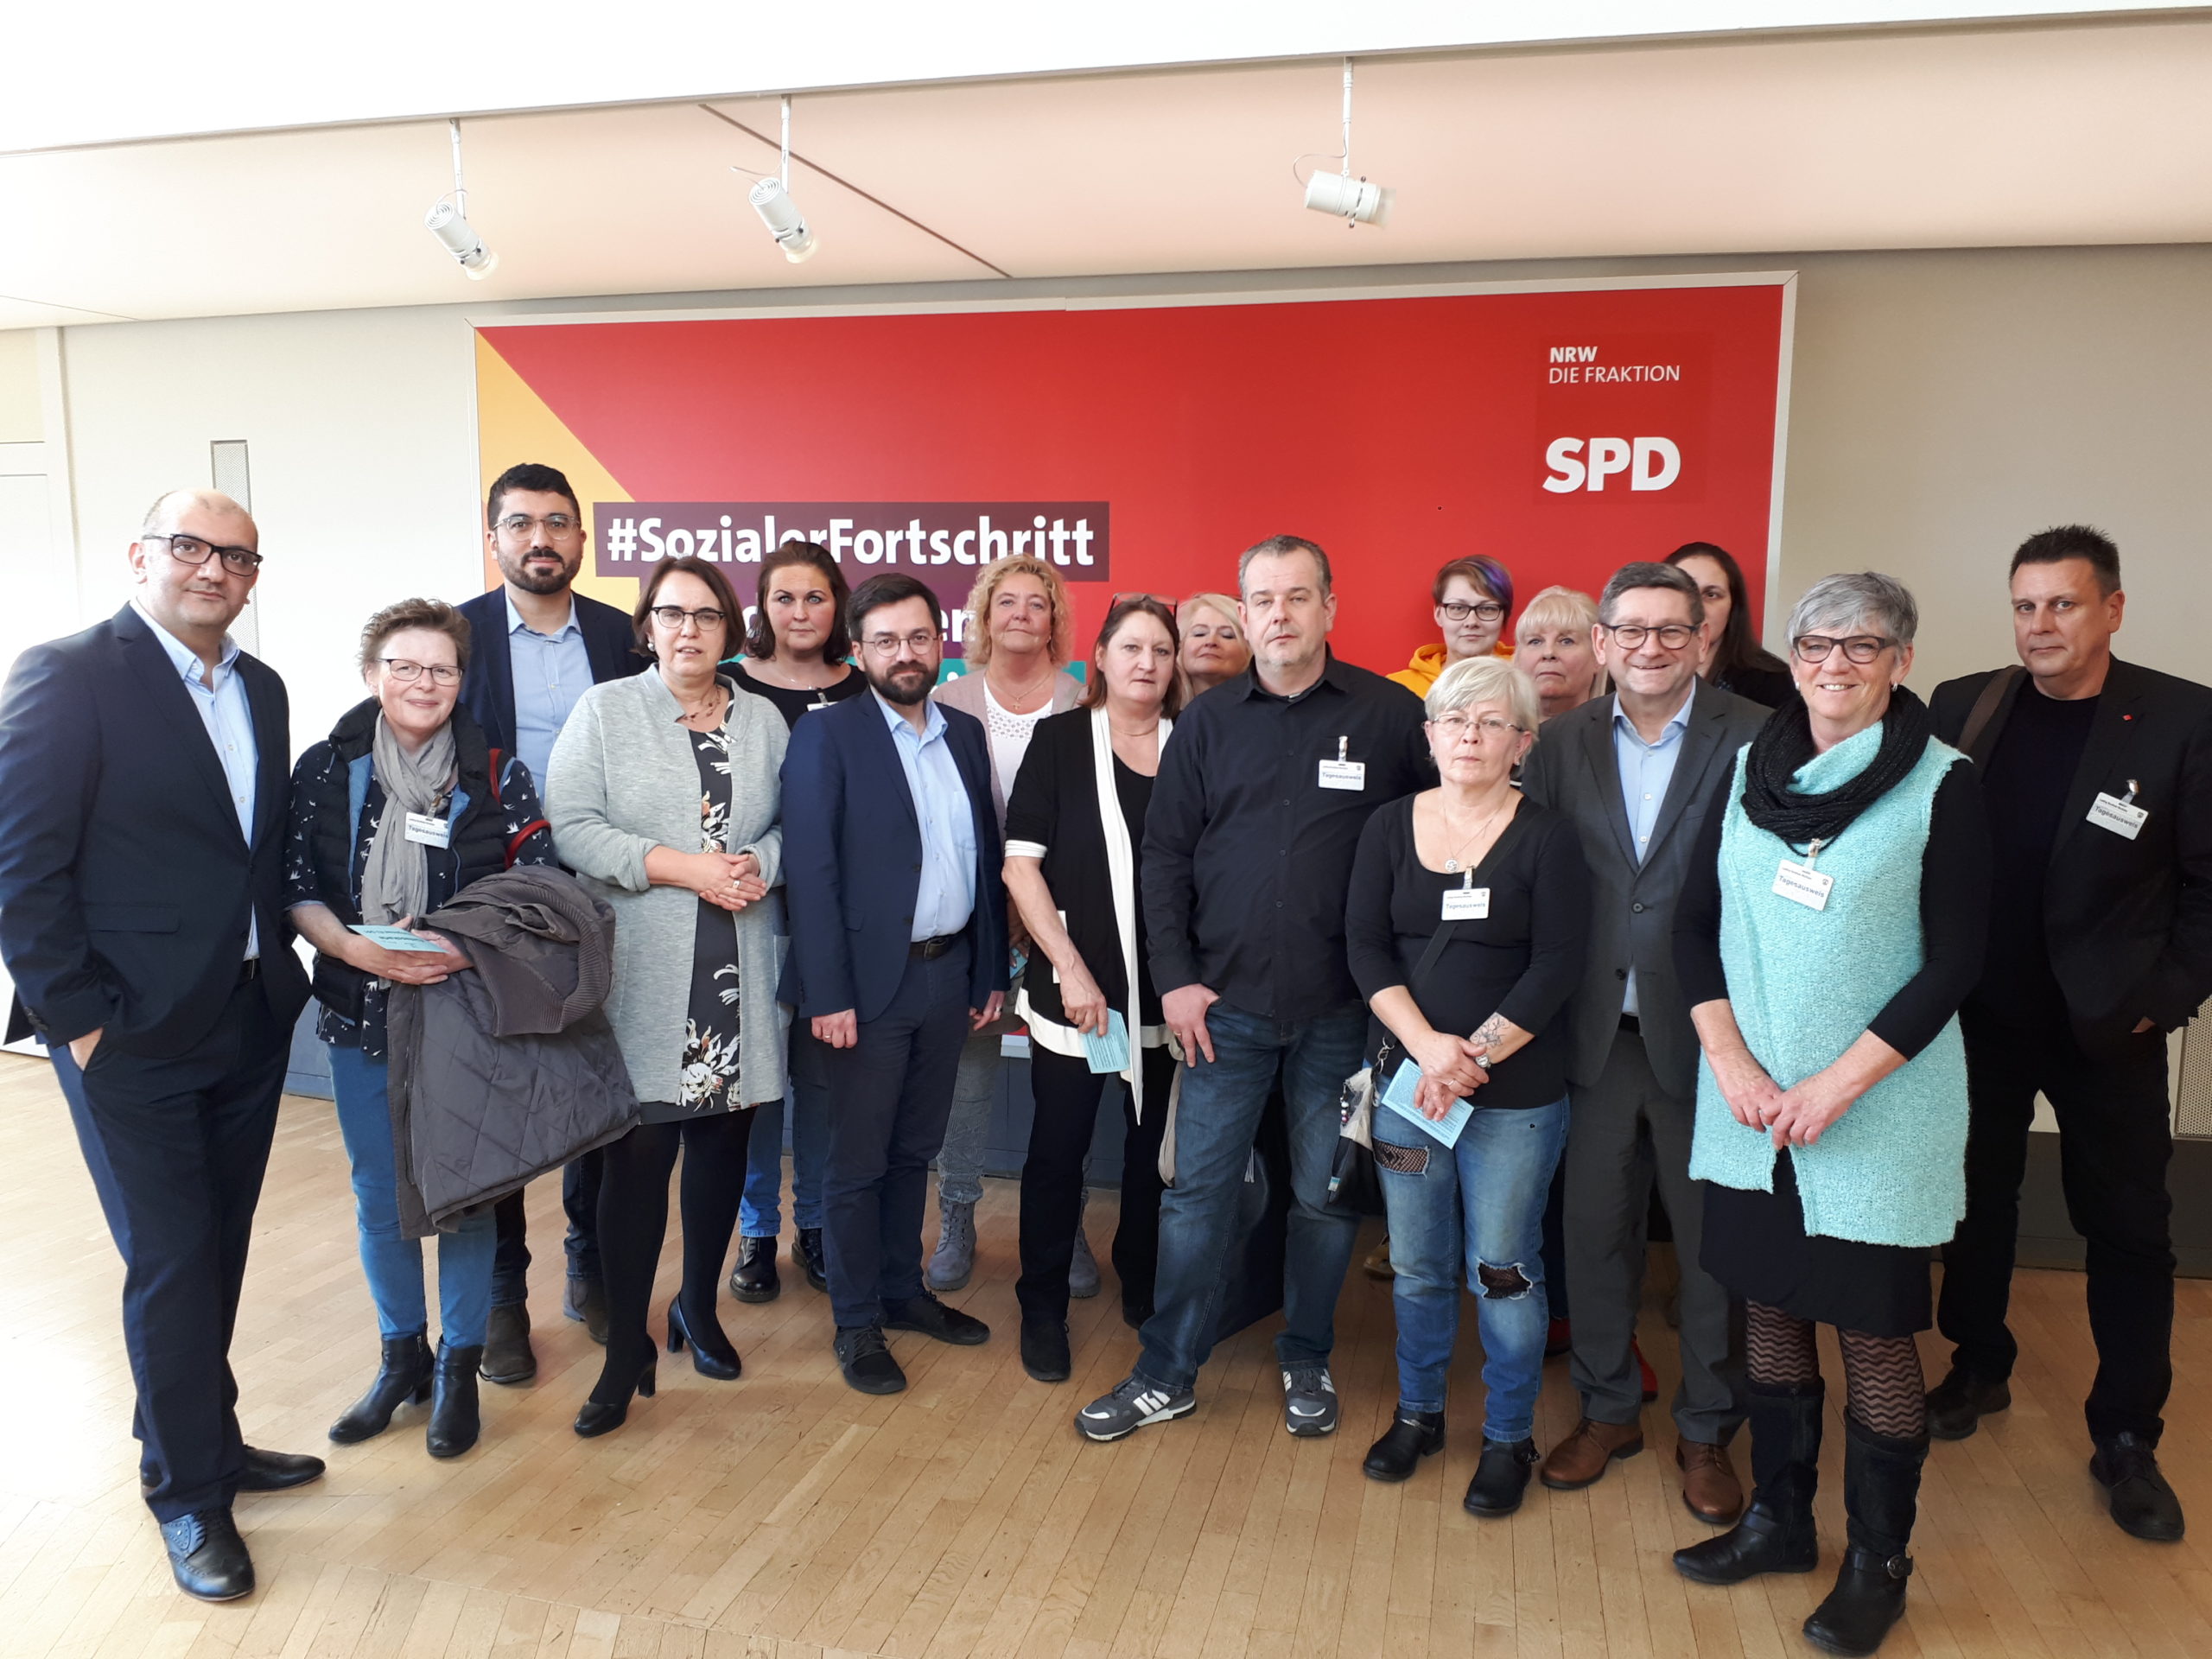 SPD-Fraktionschef Thomas Kutschaty, Volkan Baran, Anja Butschkau und weitere Ausschussmitglieder empfingen die Dortmunder Delegation des Real-Betriebsrats im Landtag.